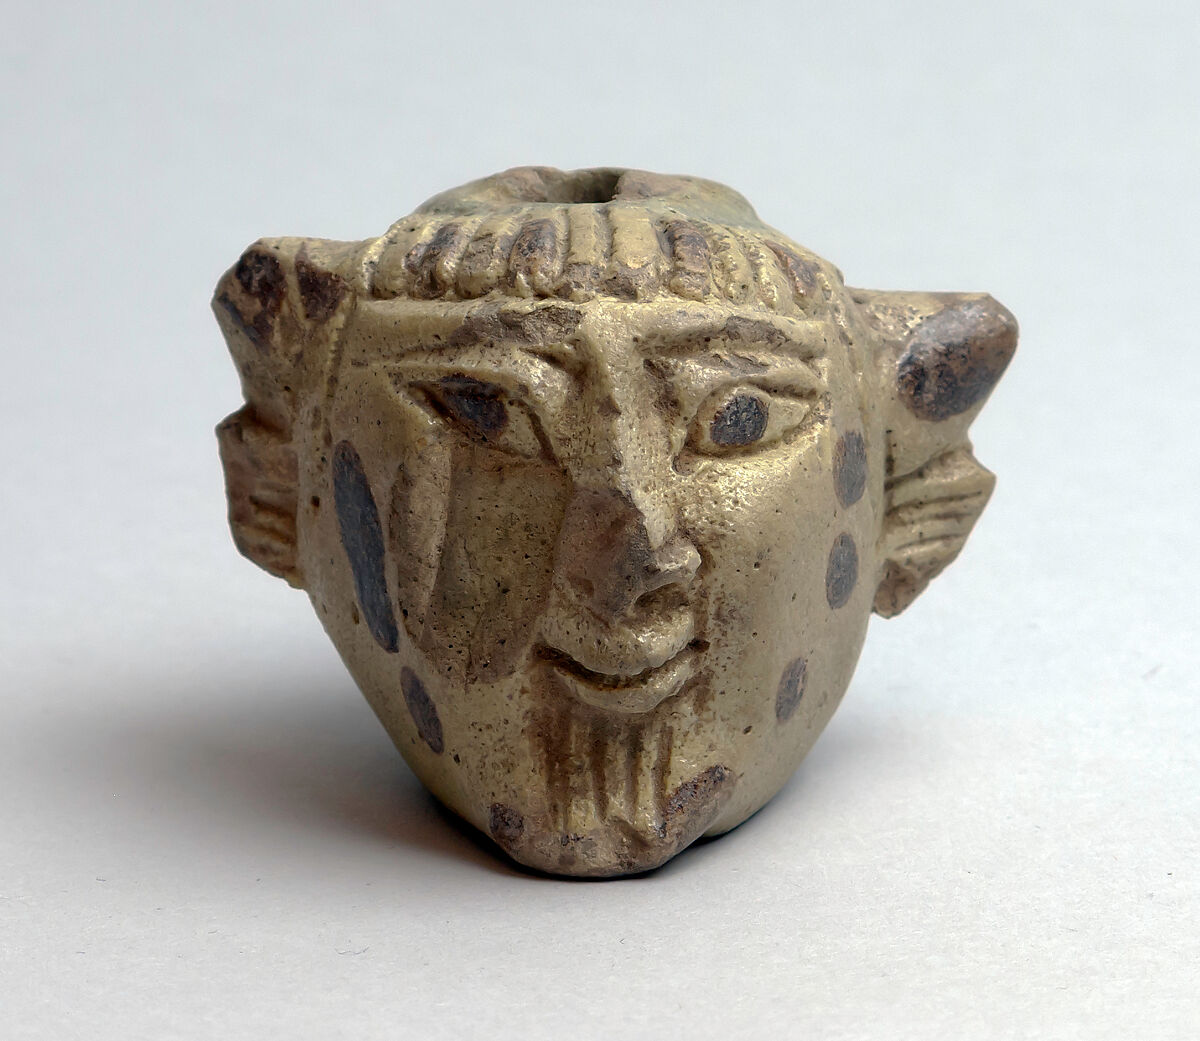 Faience aryballos (perfume vase) in the form of a head of Acheloös, Faience, East Greek 